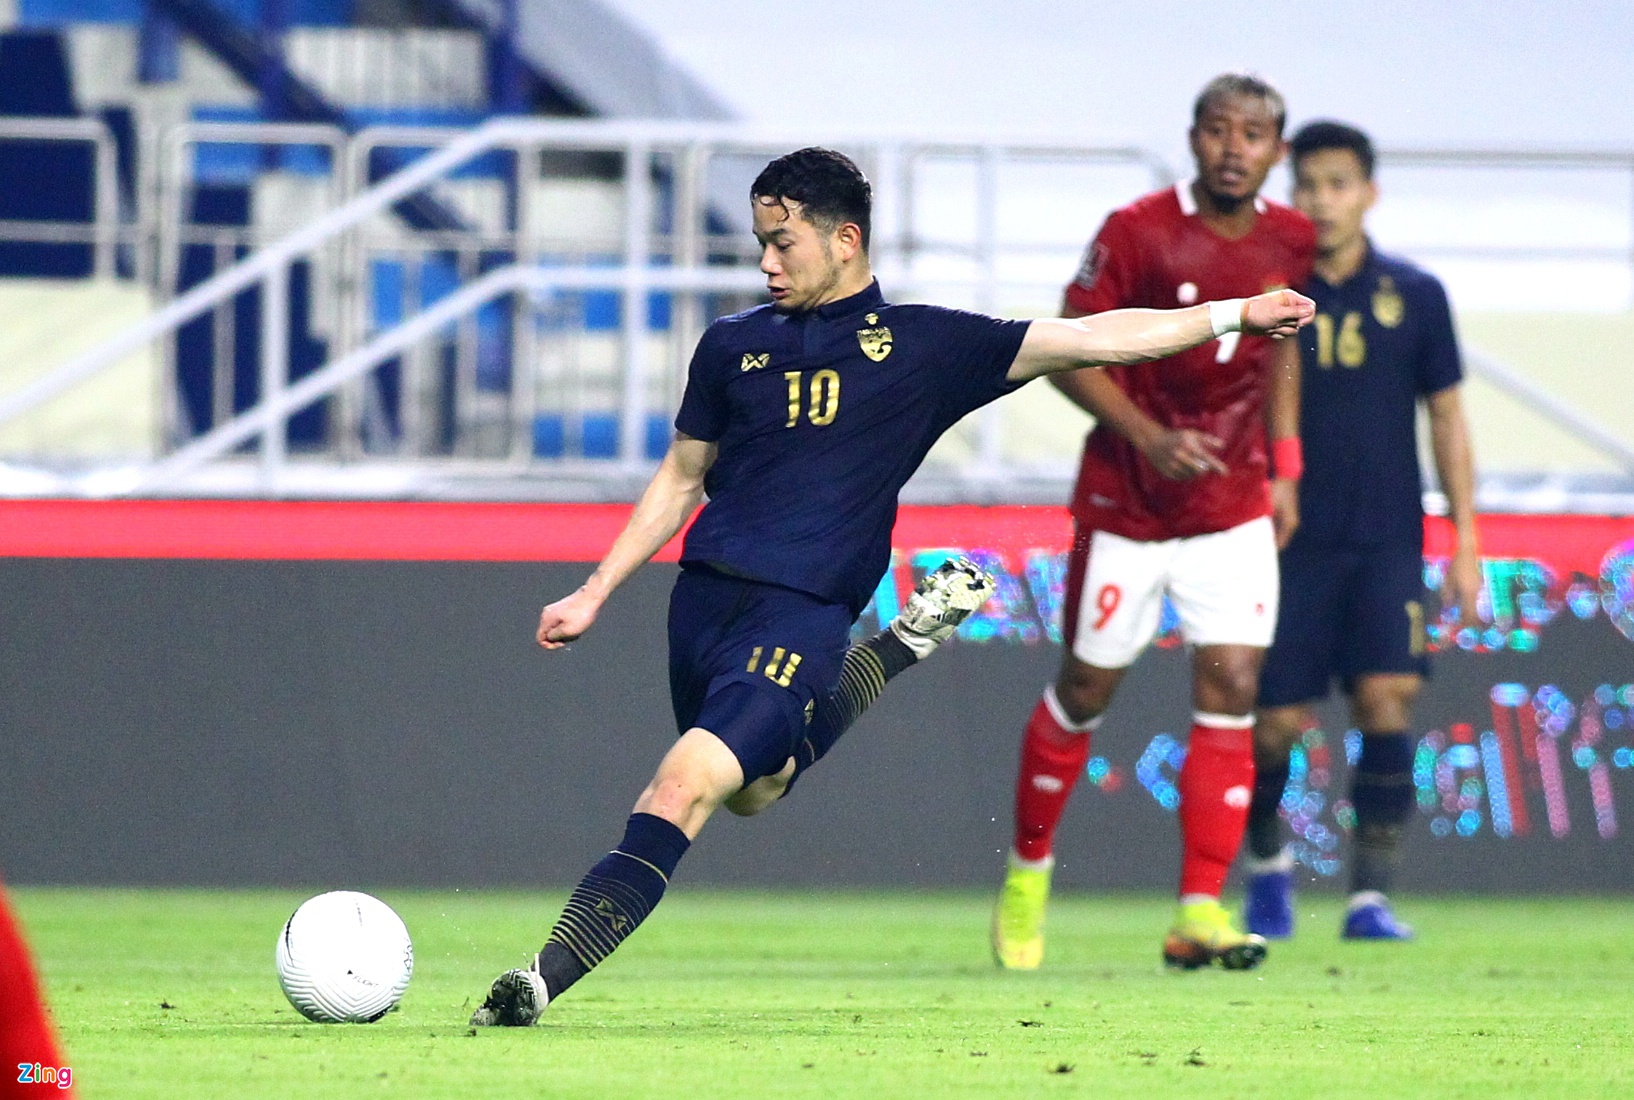 Thanawat, tiền vệ trung tâm đang thuộc biên chế Leicester City, được kỳ vọng tỏa sáng ở giải U23 châu Á 2022